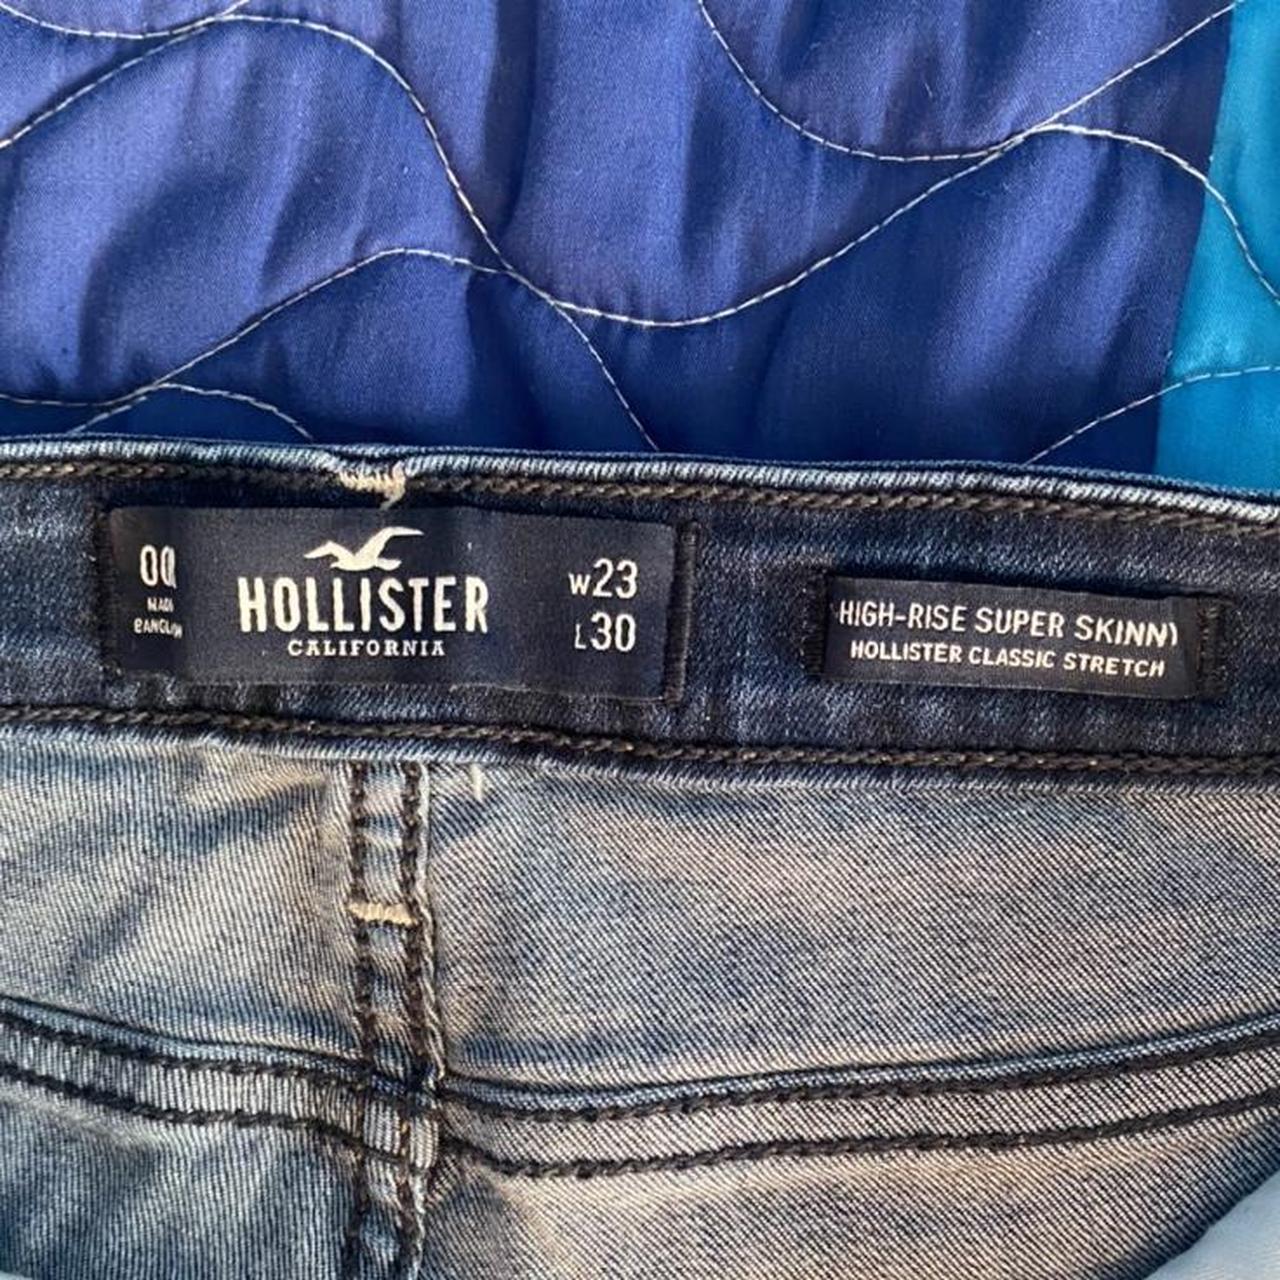 🌻 NWOT Hollister High Rise Super Skinny Jeans - Depop